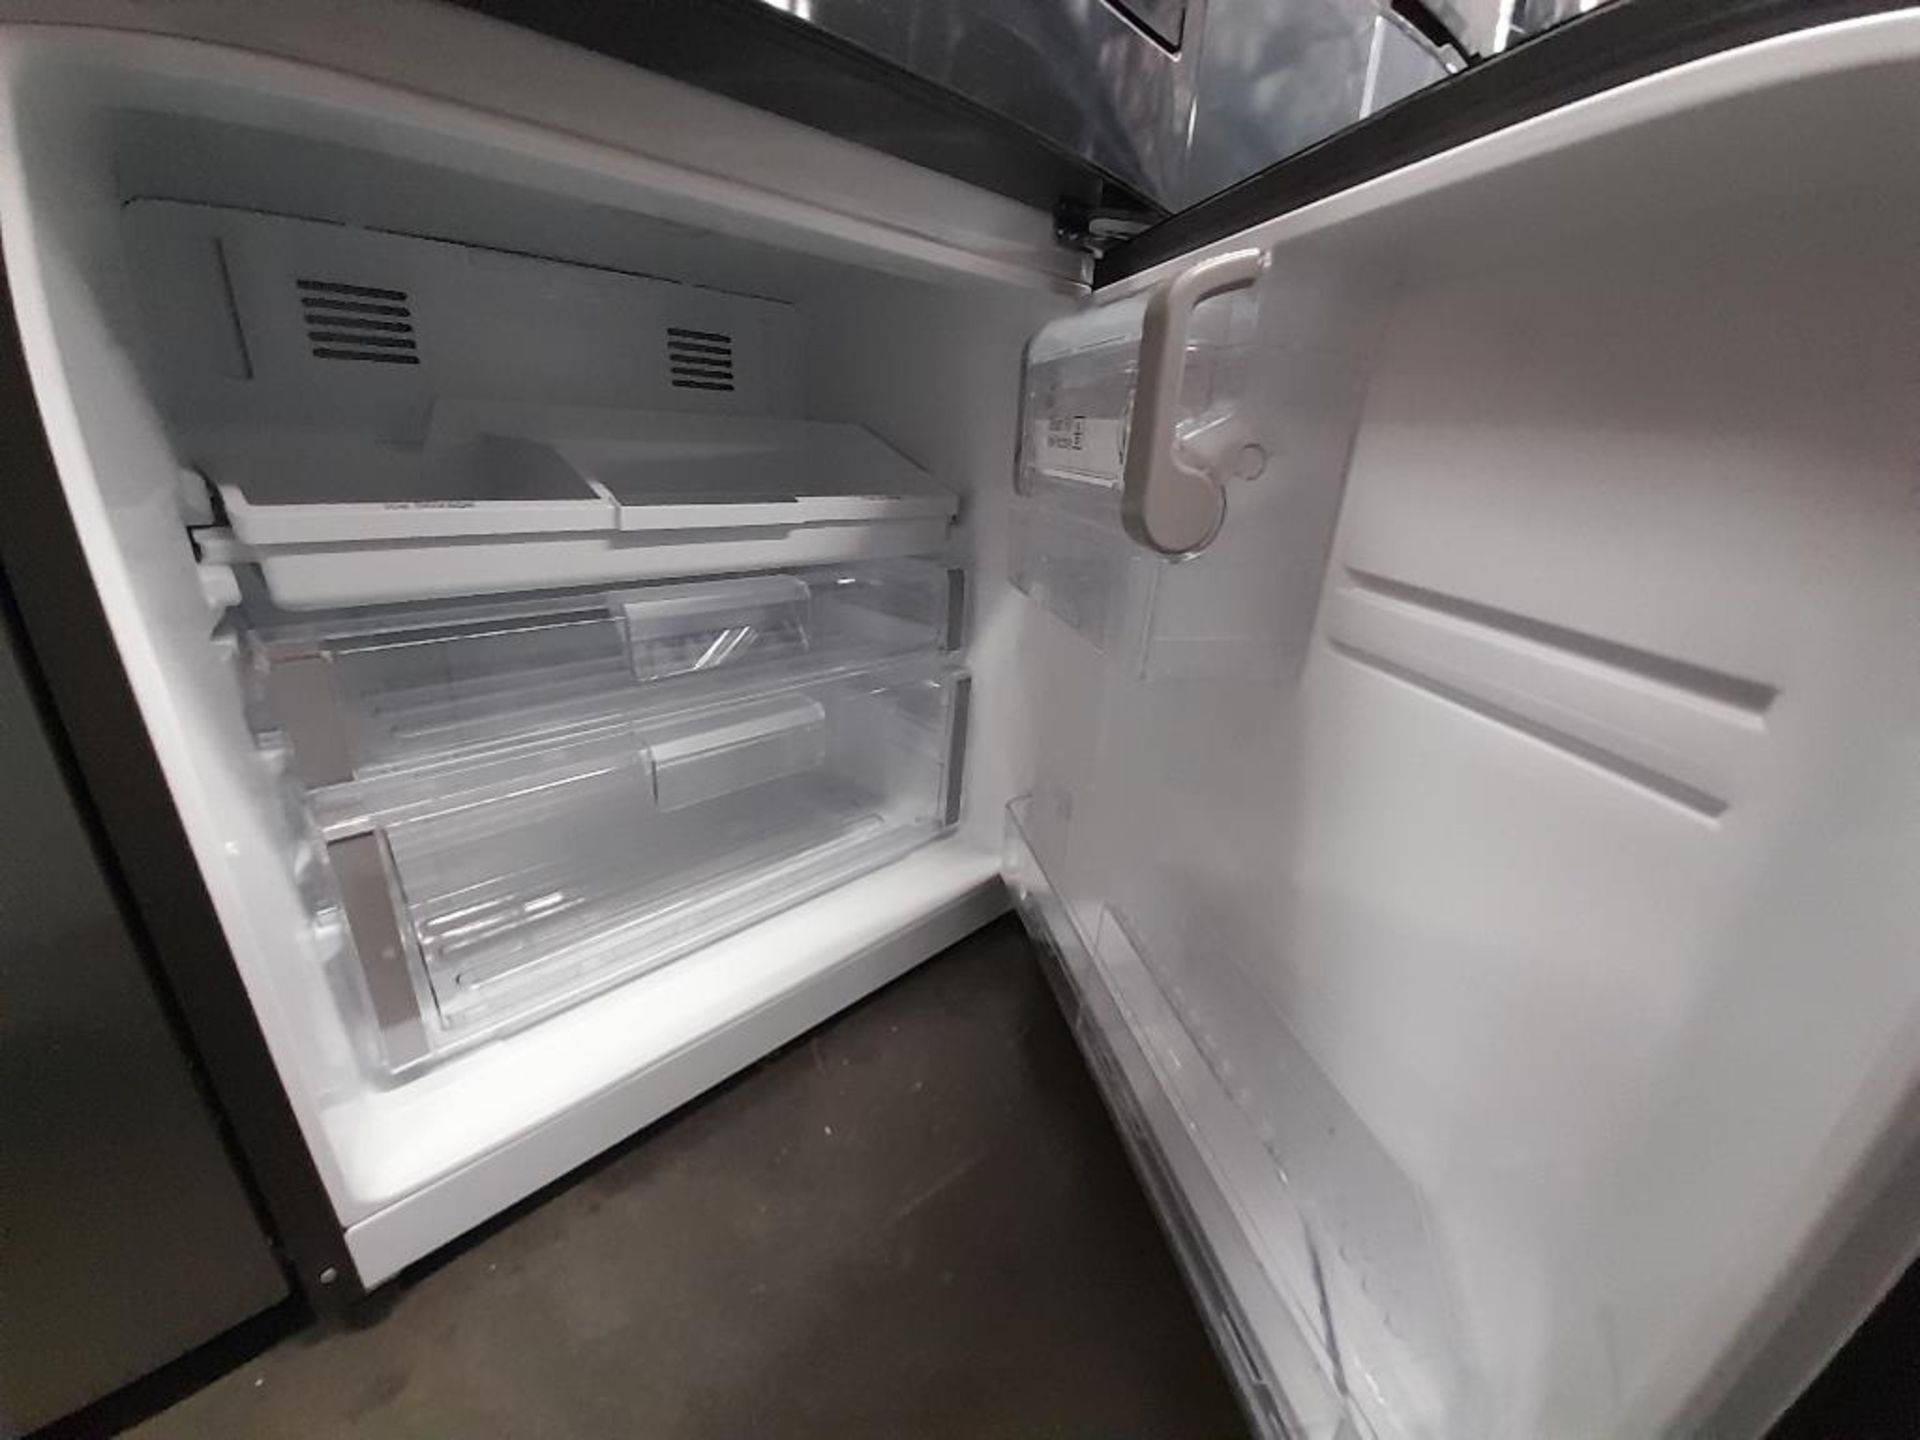 Lote de 2 refrigeradores contiene: 1 Refrigerador Marca MABE, Modelo IWMRP1, Serie ND, Color NEGRO; - Image 5 of 7